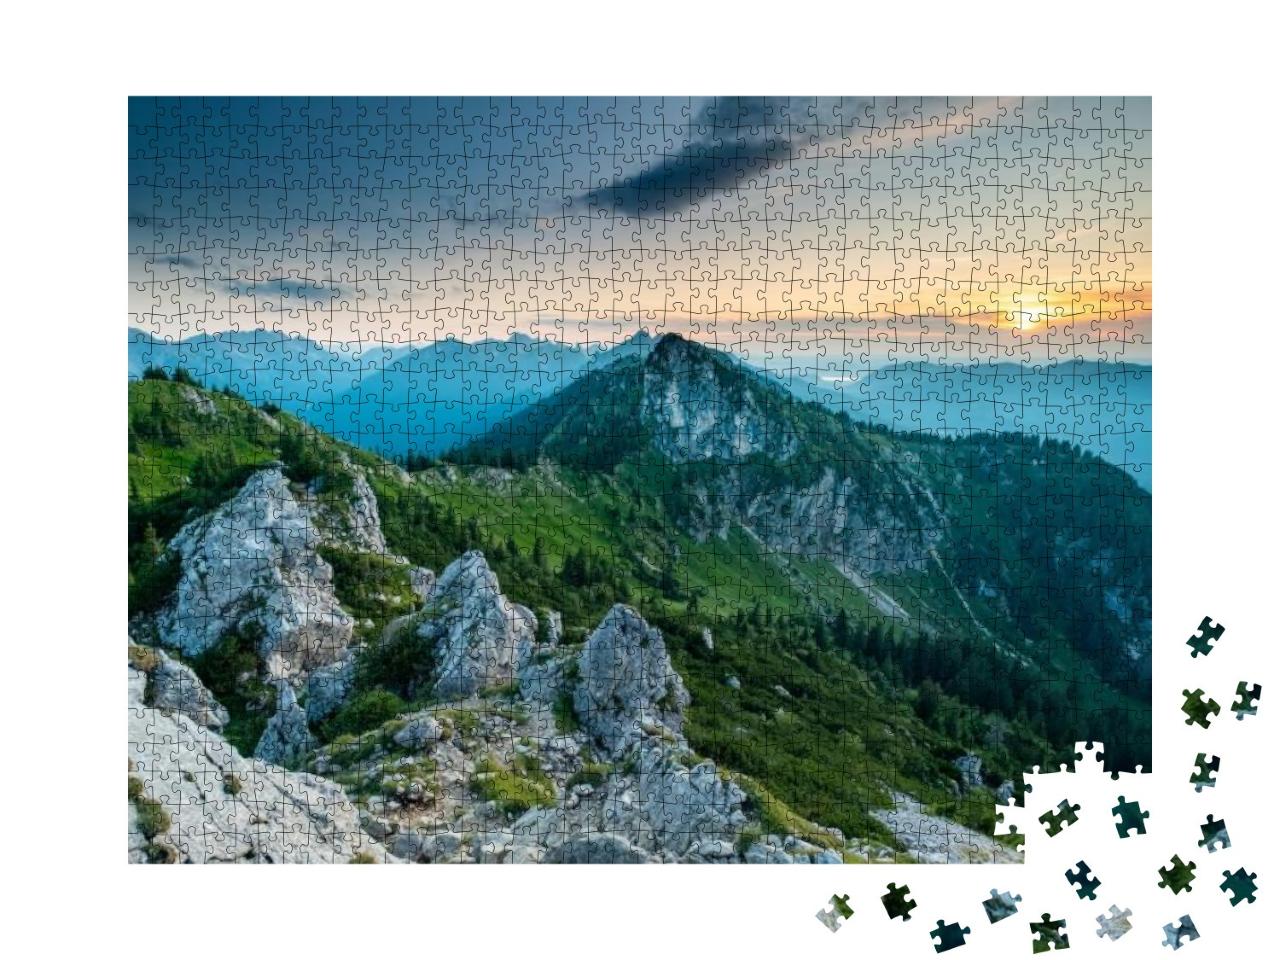 Puzzle 1000 Teile „Sonnenuntergang am Teufelstaettkopf in den Ammergauer Alpen“